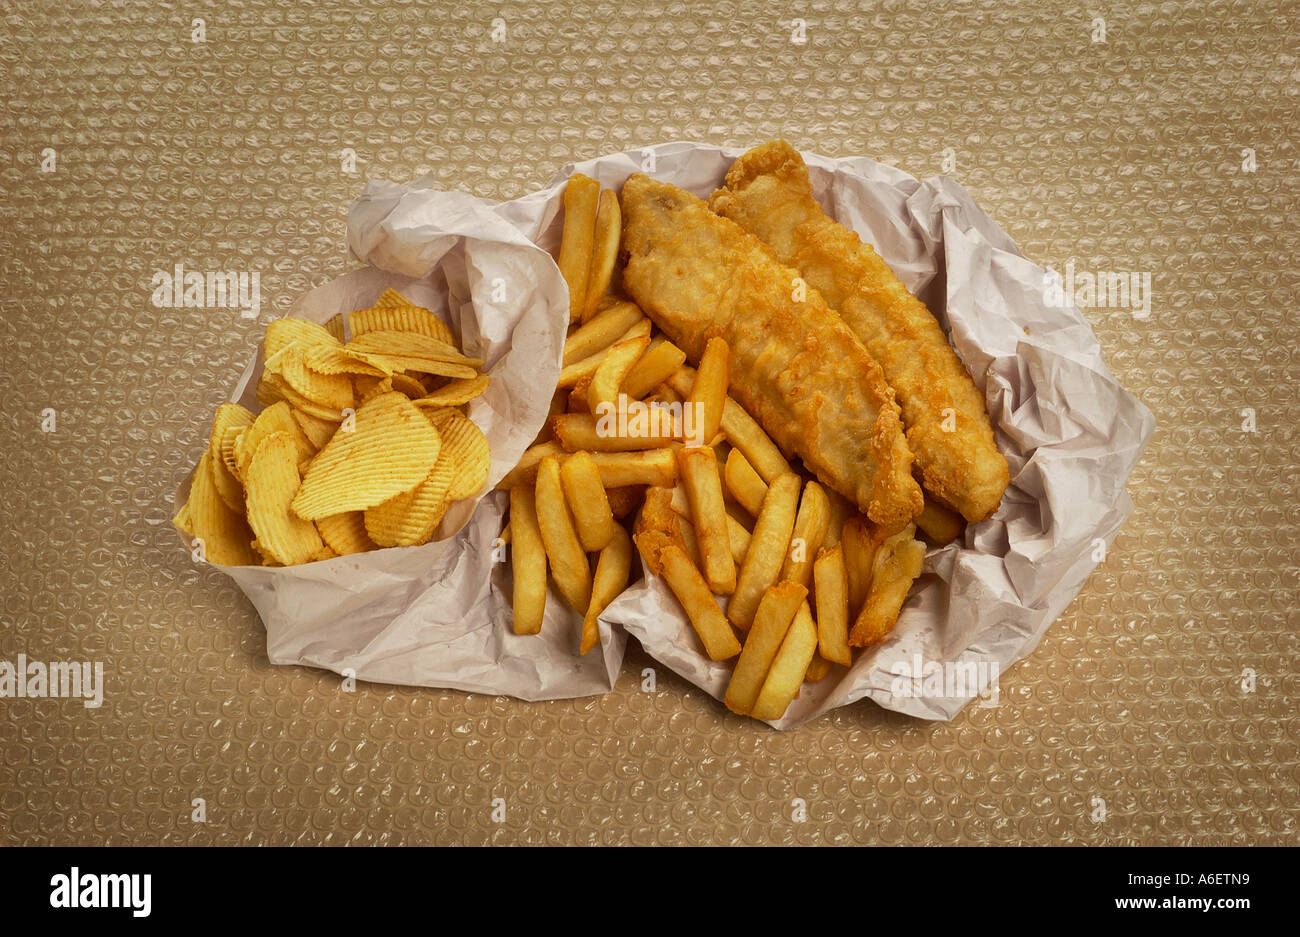 Scaglie di pesce avvolto nella carta Esempio di alta cibo grasso per essere consumato con moderazione Foto Stock